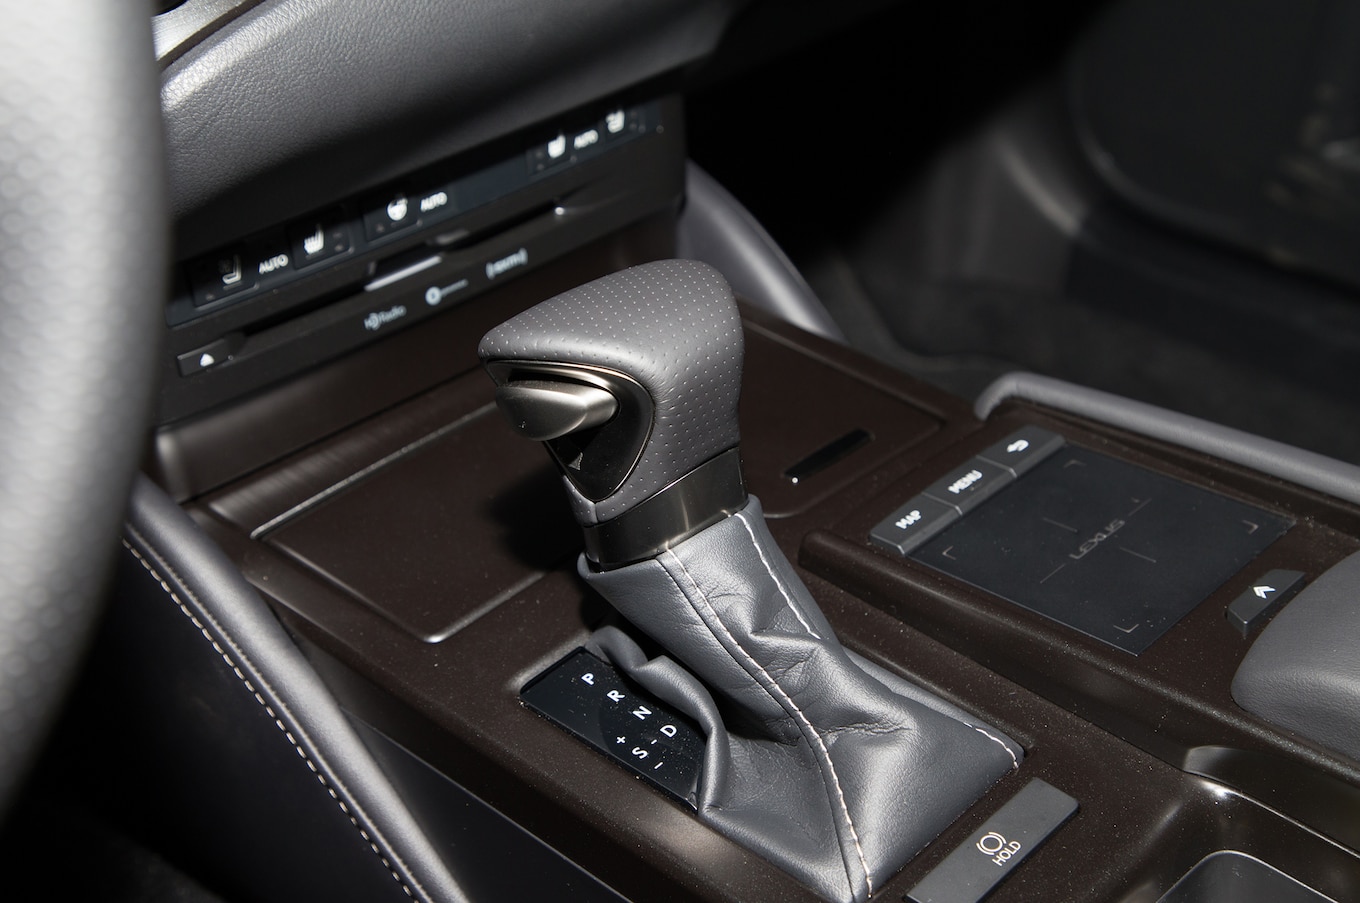 2019-Lexus-ES-interior-center-console-in-brown.jpg